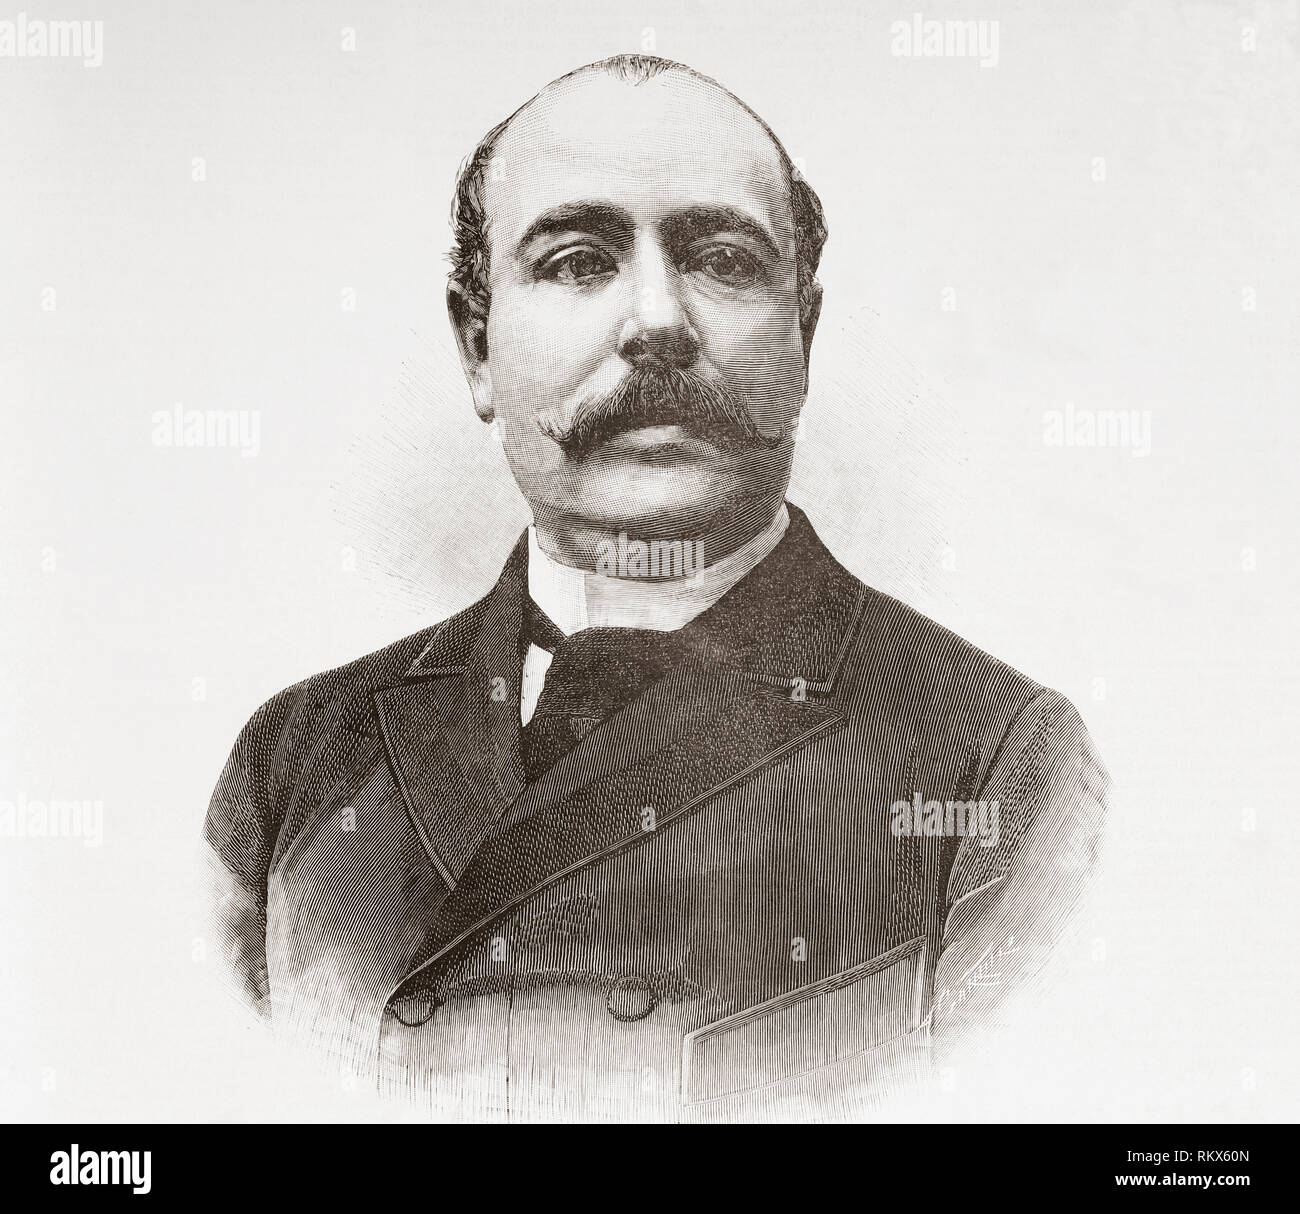 Alberto Bosch y Fustegueras, 1848 - 1900. Spanish engineer and politician.  From La Ilustracion Espanola y Americana, published 1892. Stock Photo